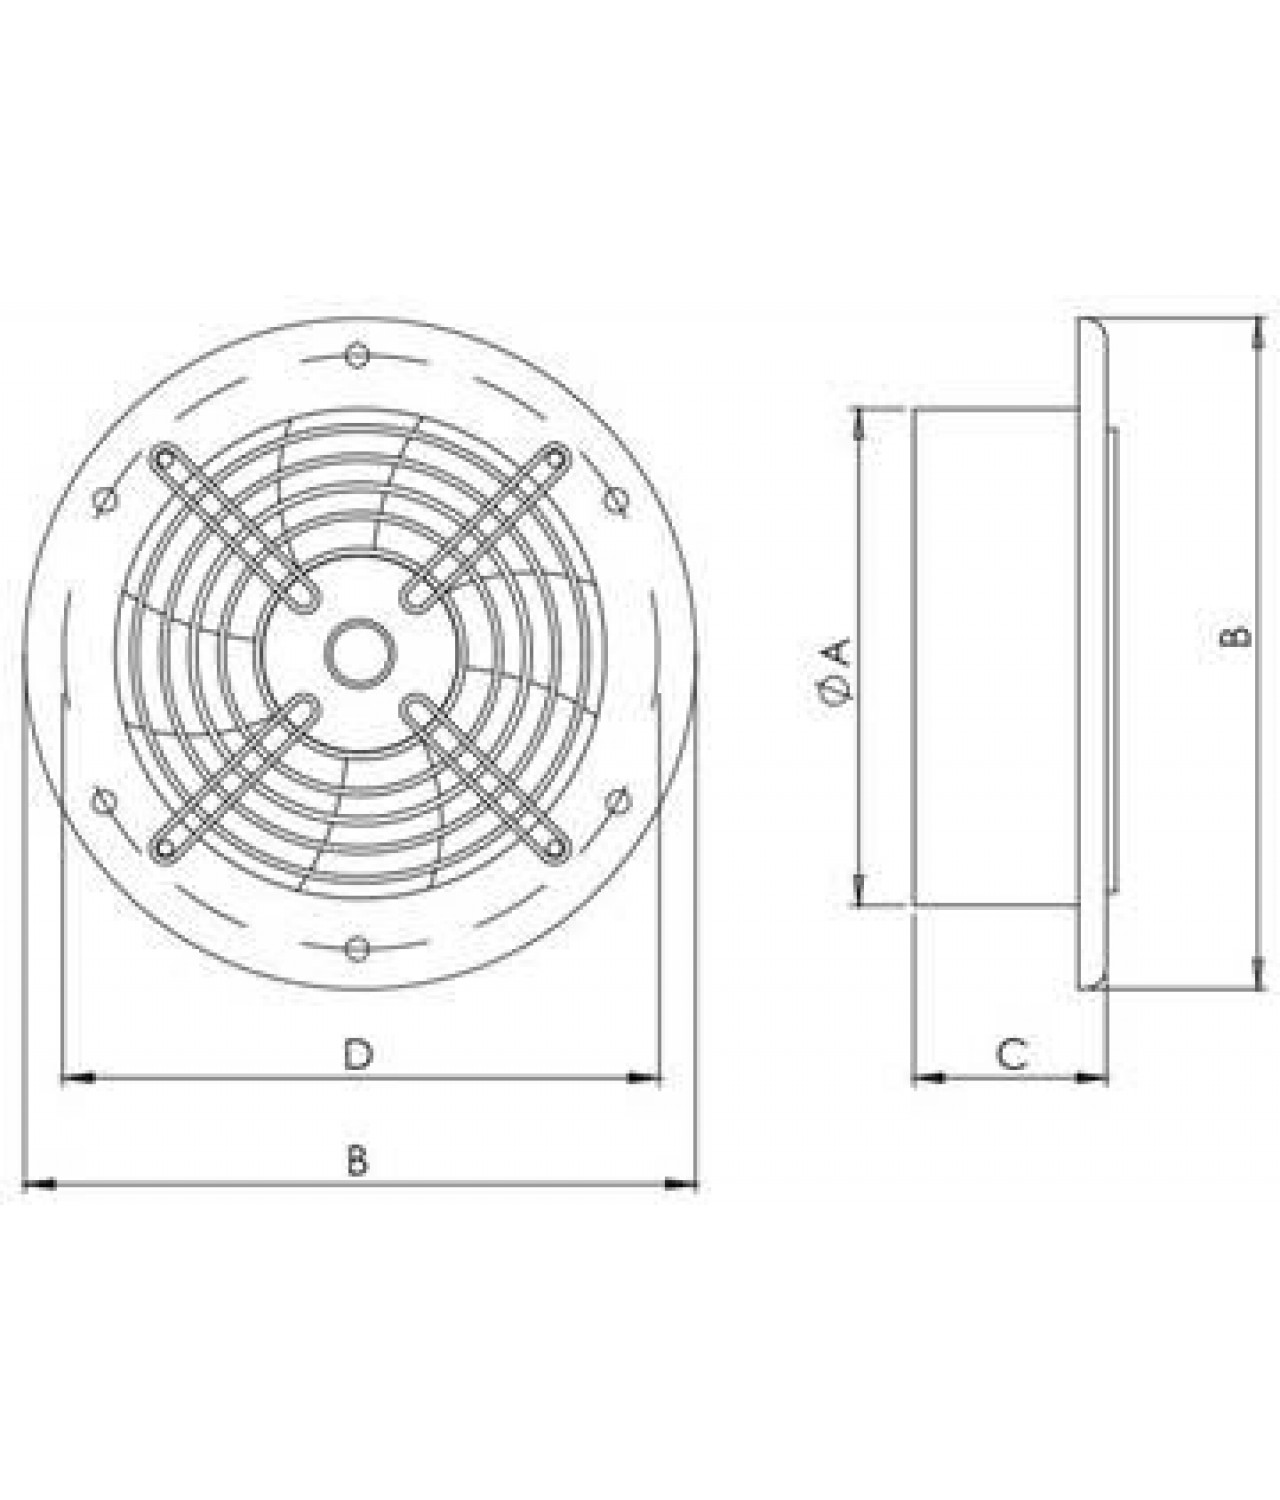 Ašiniai ventiliatoriai Axia ROS ≤20695 m³/h - brėžinys